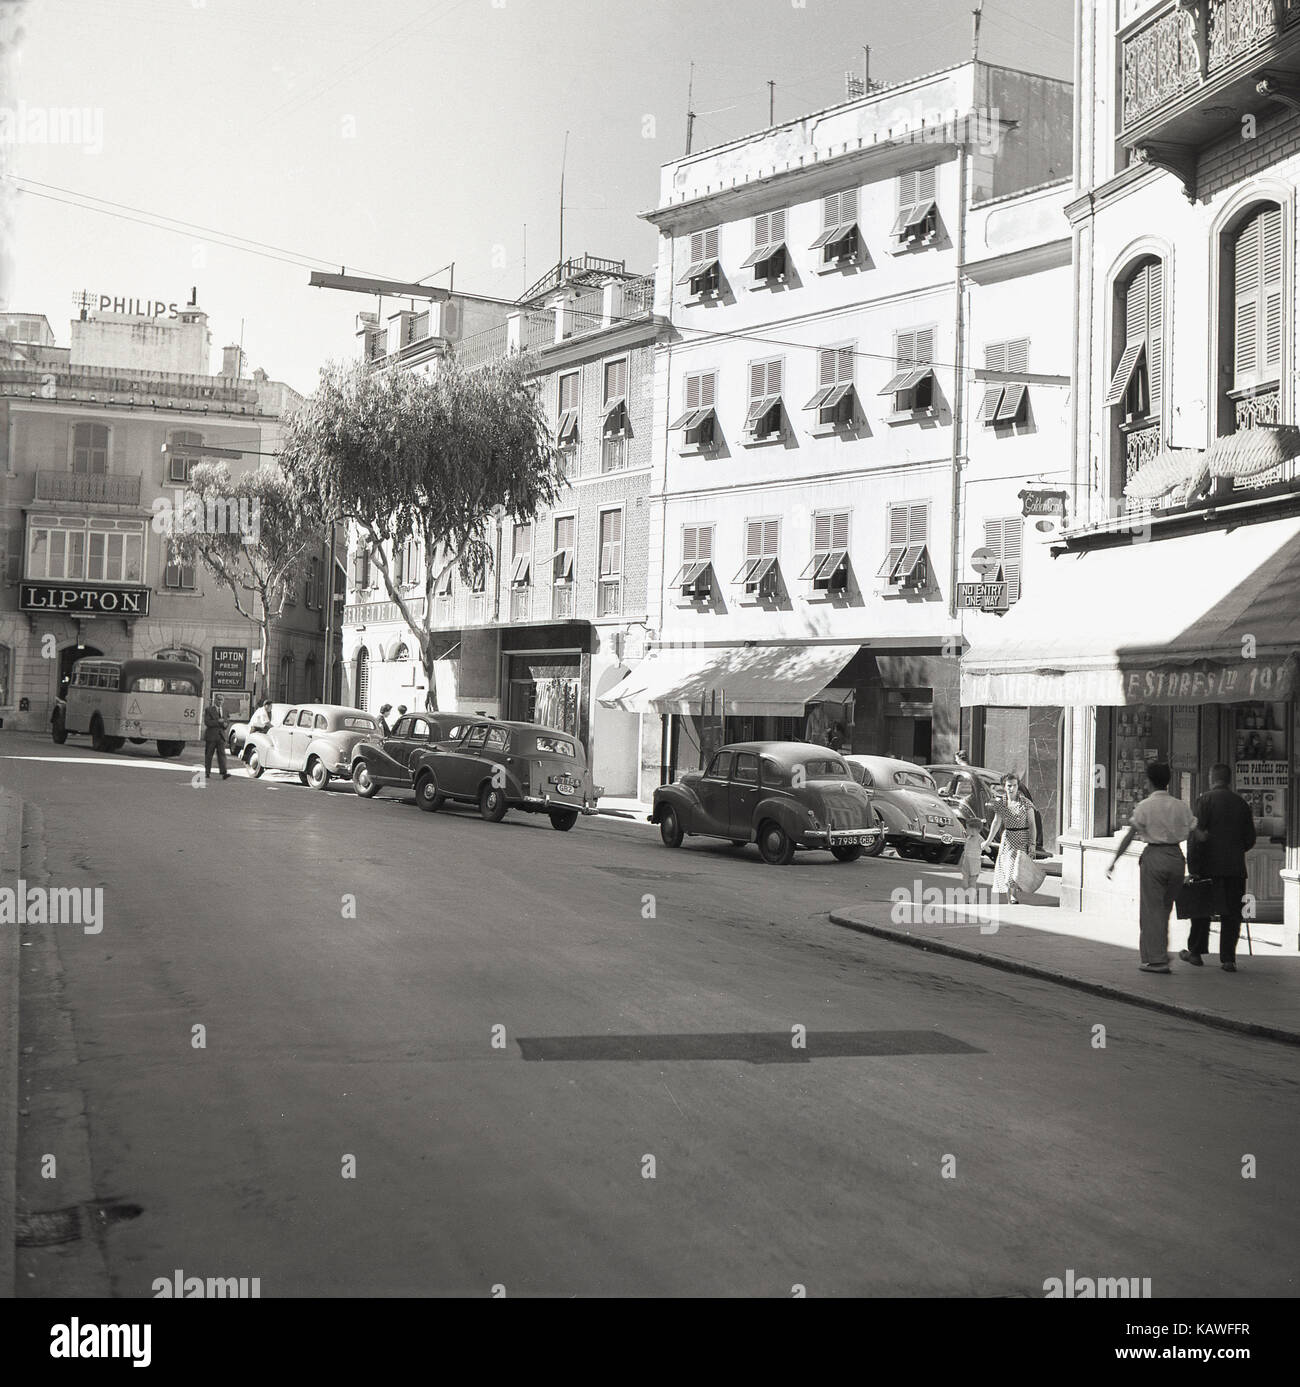 Années 1950, tableau historique par J Allan Paiement de Passage du Giro, Southport, Gibraltar, montrant des voitures, des boutiques et un appelé publicité Lipton provisions fraîches chaque semaine. Banque D'Images